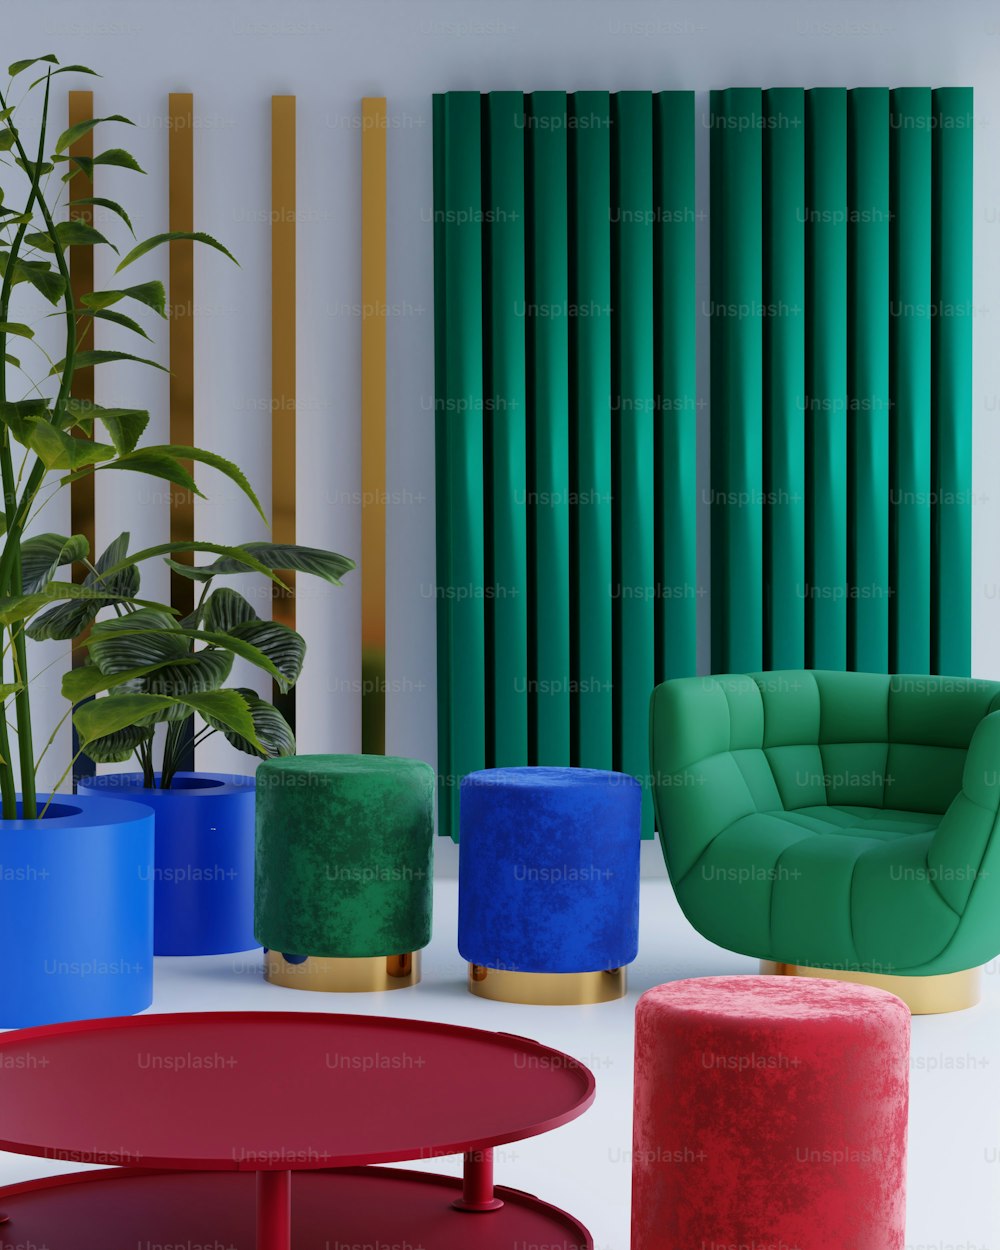 Ein Raum voller Möbel und einer grünen Pflanze